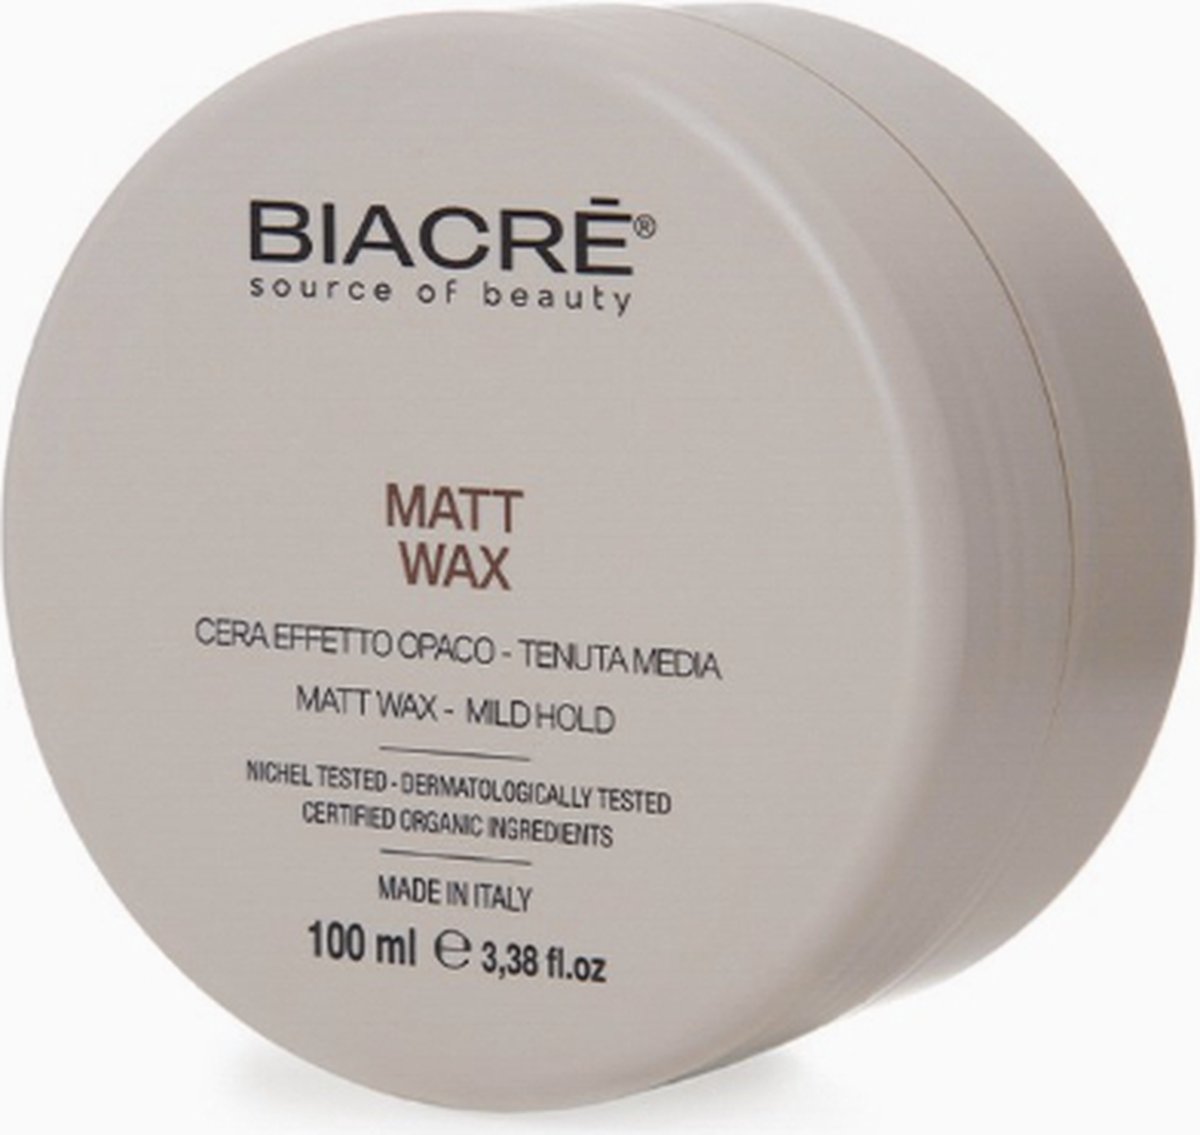 Biacrè Styling Wax Matt Wax